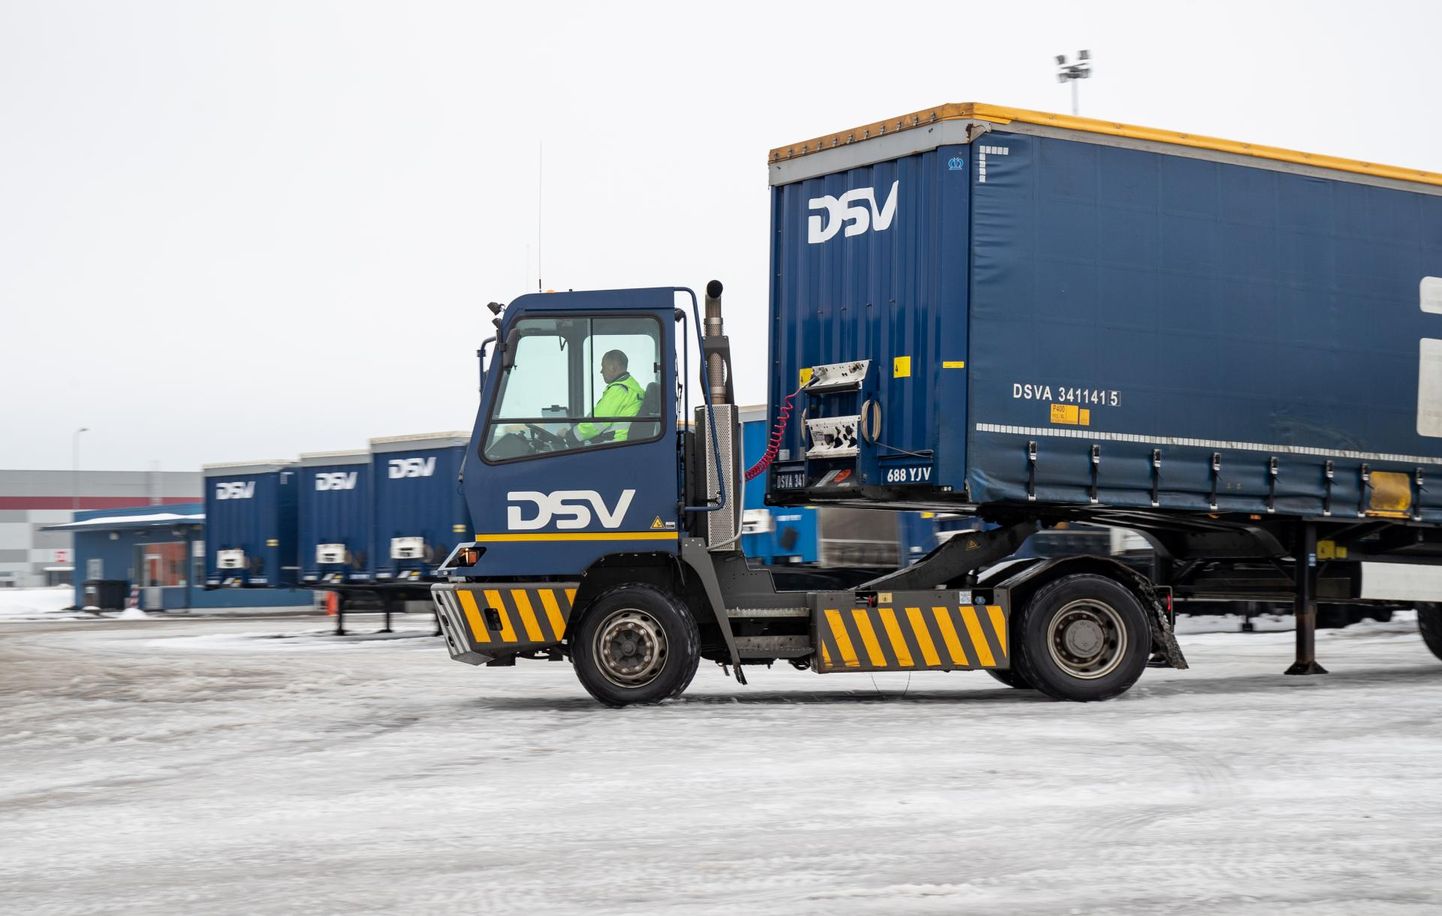 DSV on põhiline Eesti ja Rootsi vaheline kaubavedaja. Lastiks on kõik kaubad, alustades toidust ja rõivastest ning lõpetades tehnoloogia ja ehitusmaterjalidega.